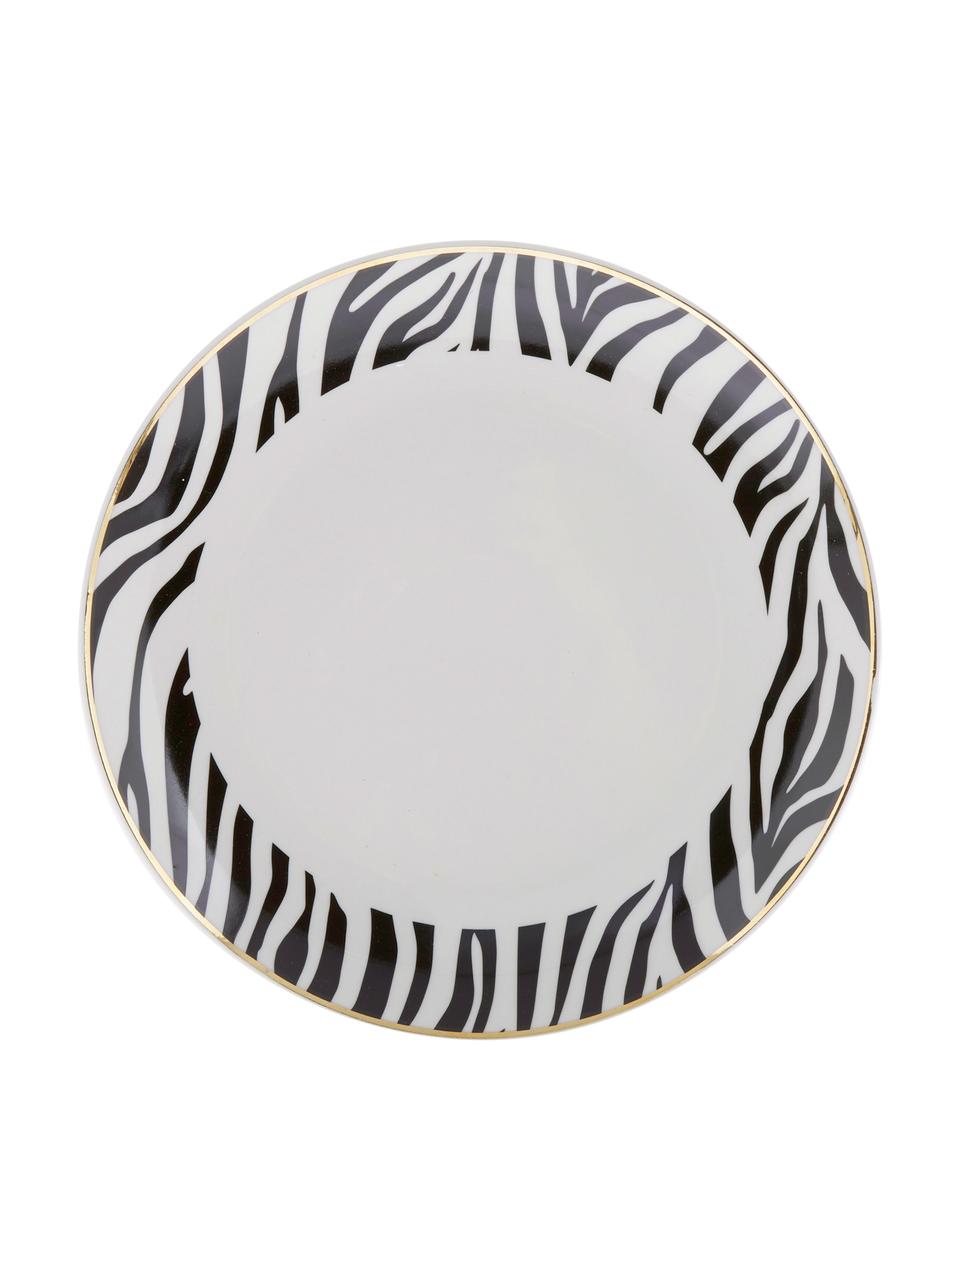 Dessertbordenset Wild Jungle, 4-delig, Porselein, Wit met zwarte vlekken, Ø 19 cm